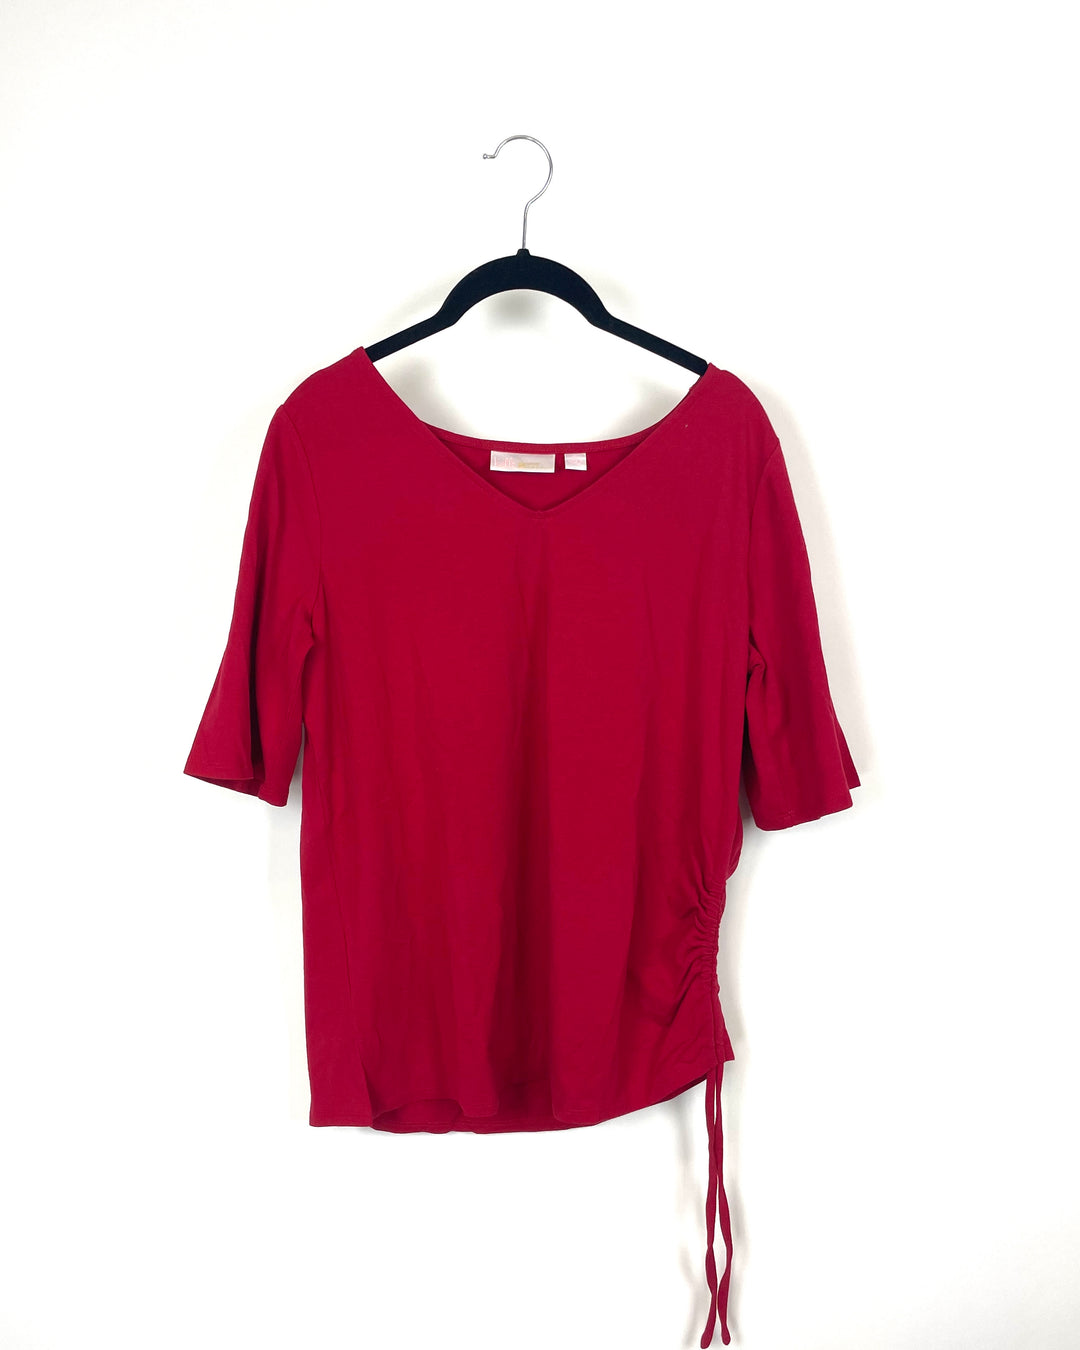 Red Short Sleeve T-Shirt- Small/Medium